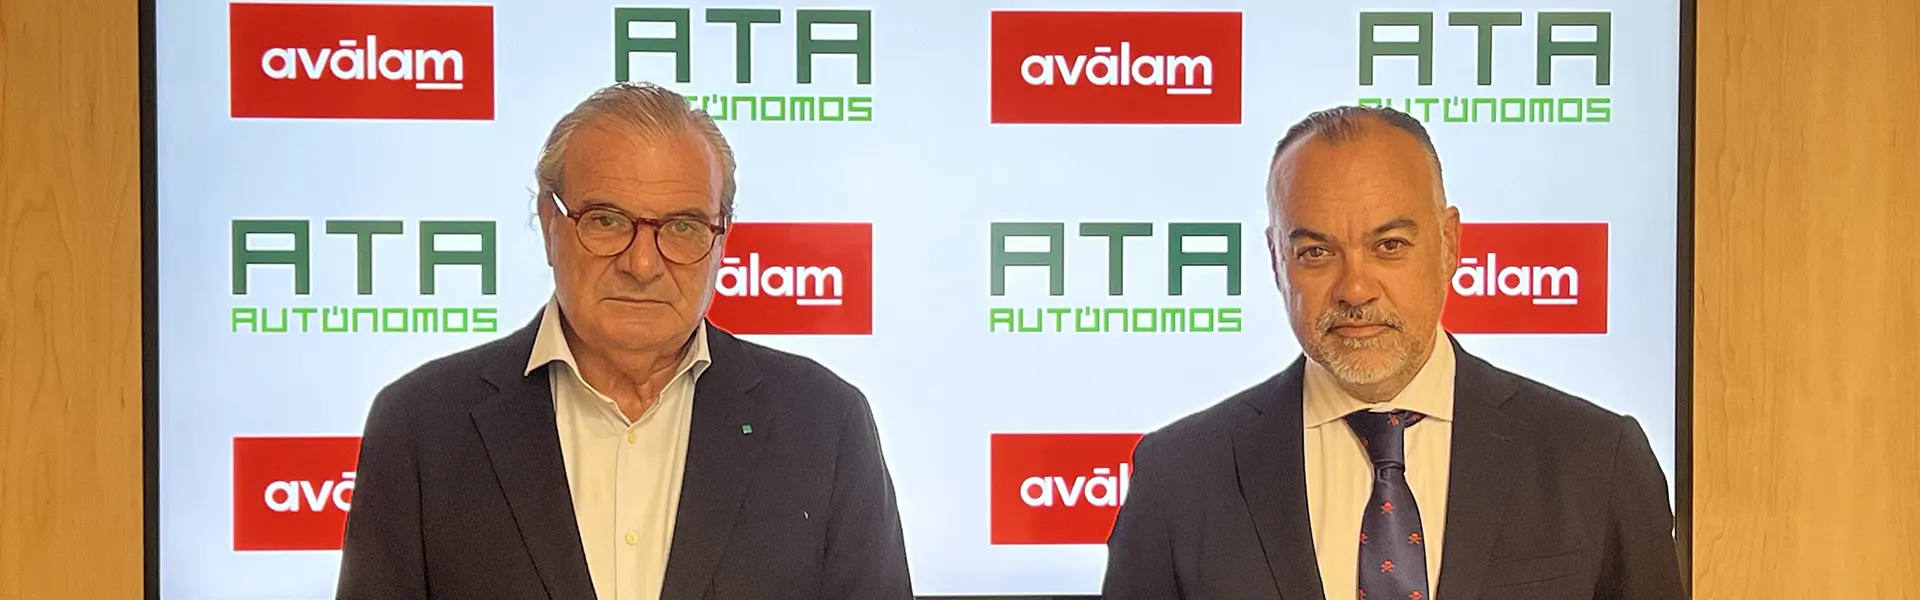 Alianza de Aválam y ATA para impulsar la financiación de los autónomos en la comunidad ultimas noticias cesgar